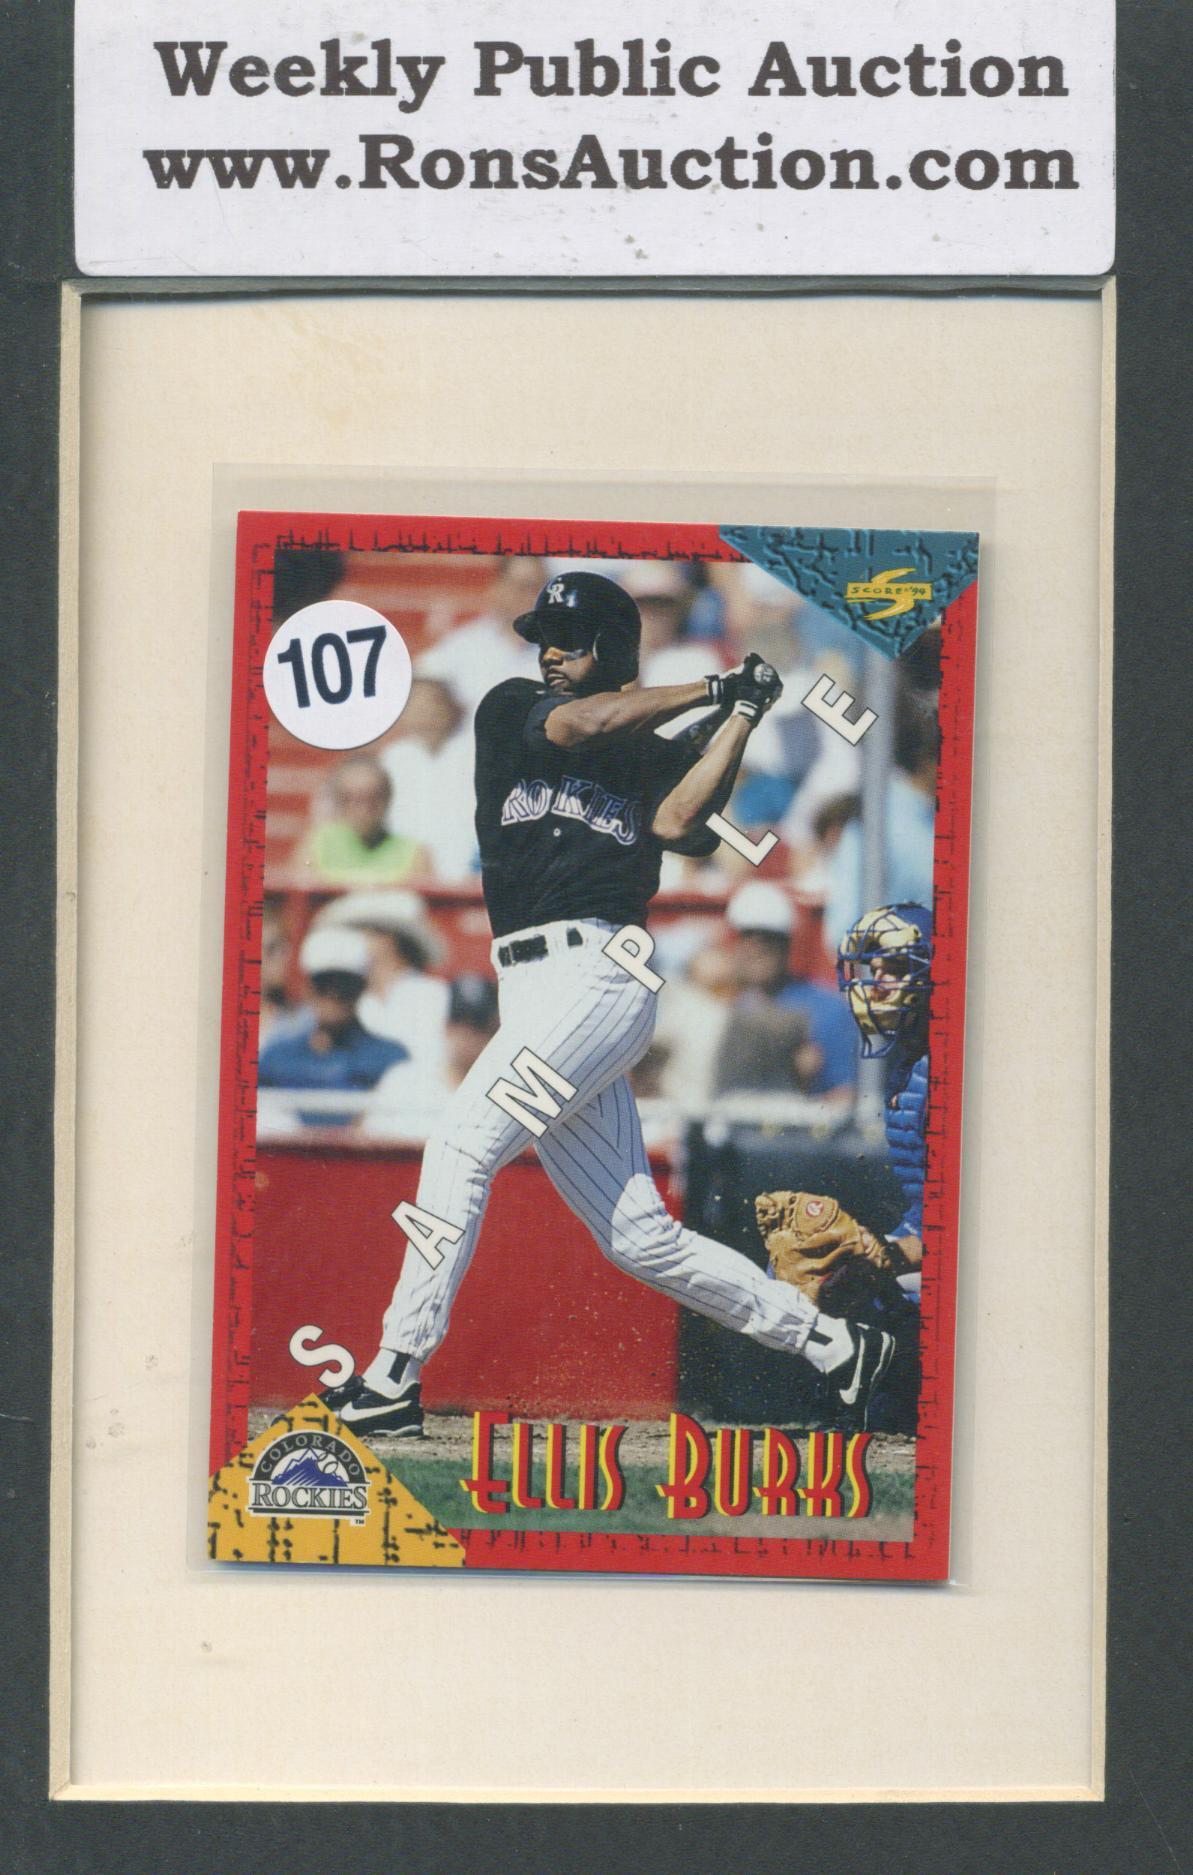 Ellis Burks Score 94' Baseball Promo Card